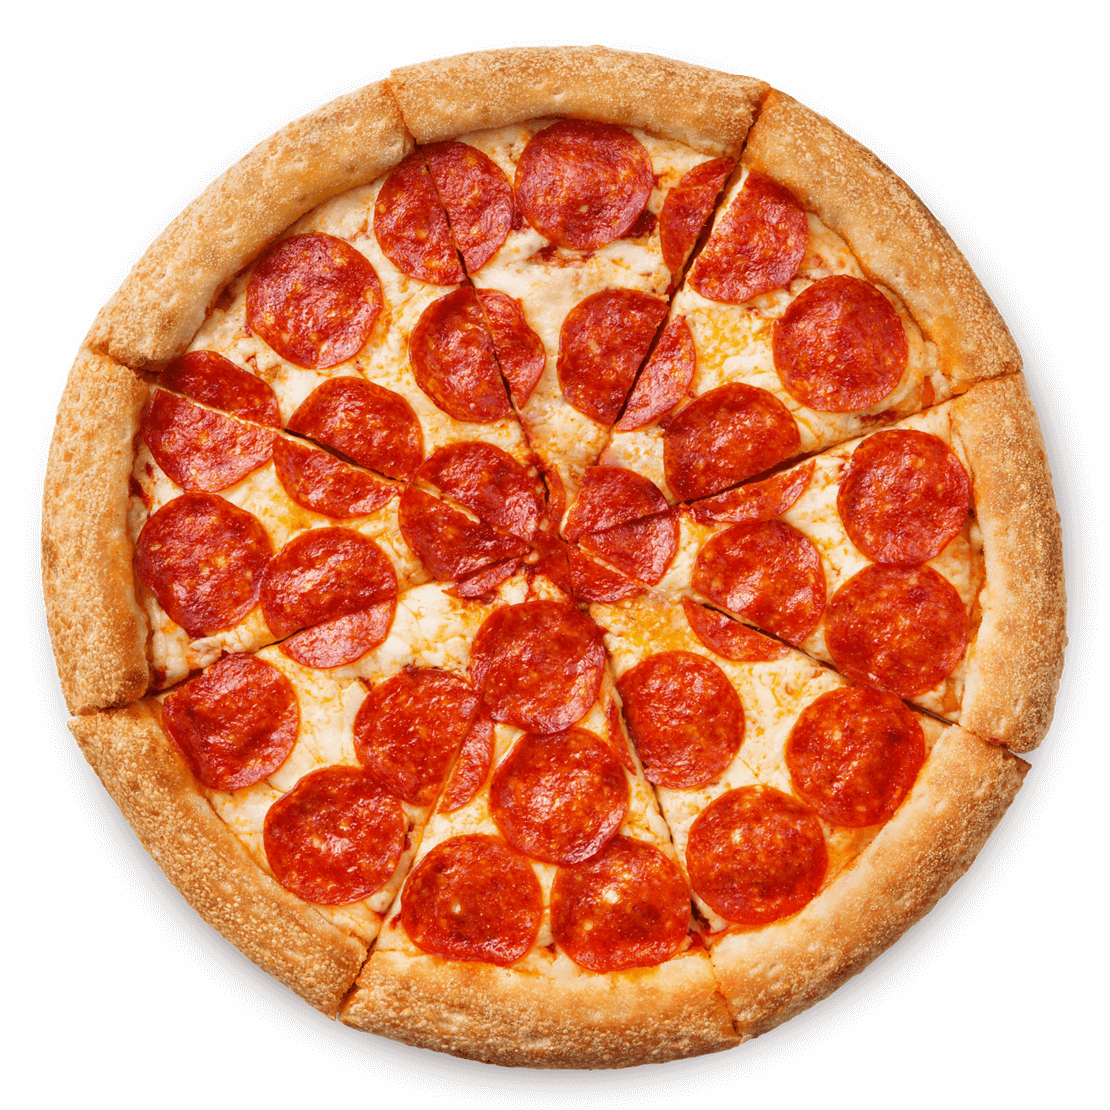 состав пиццы пепперони в домашних условиях фото 63